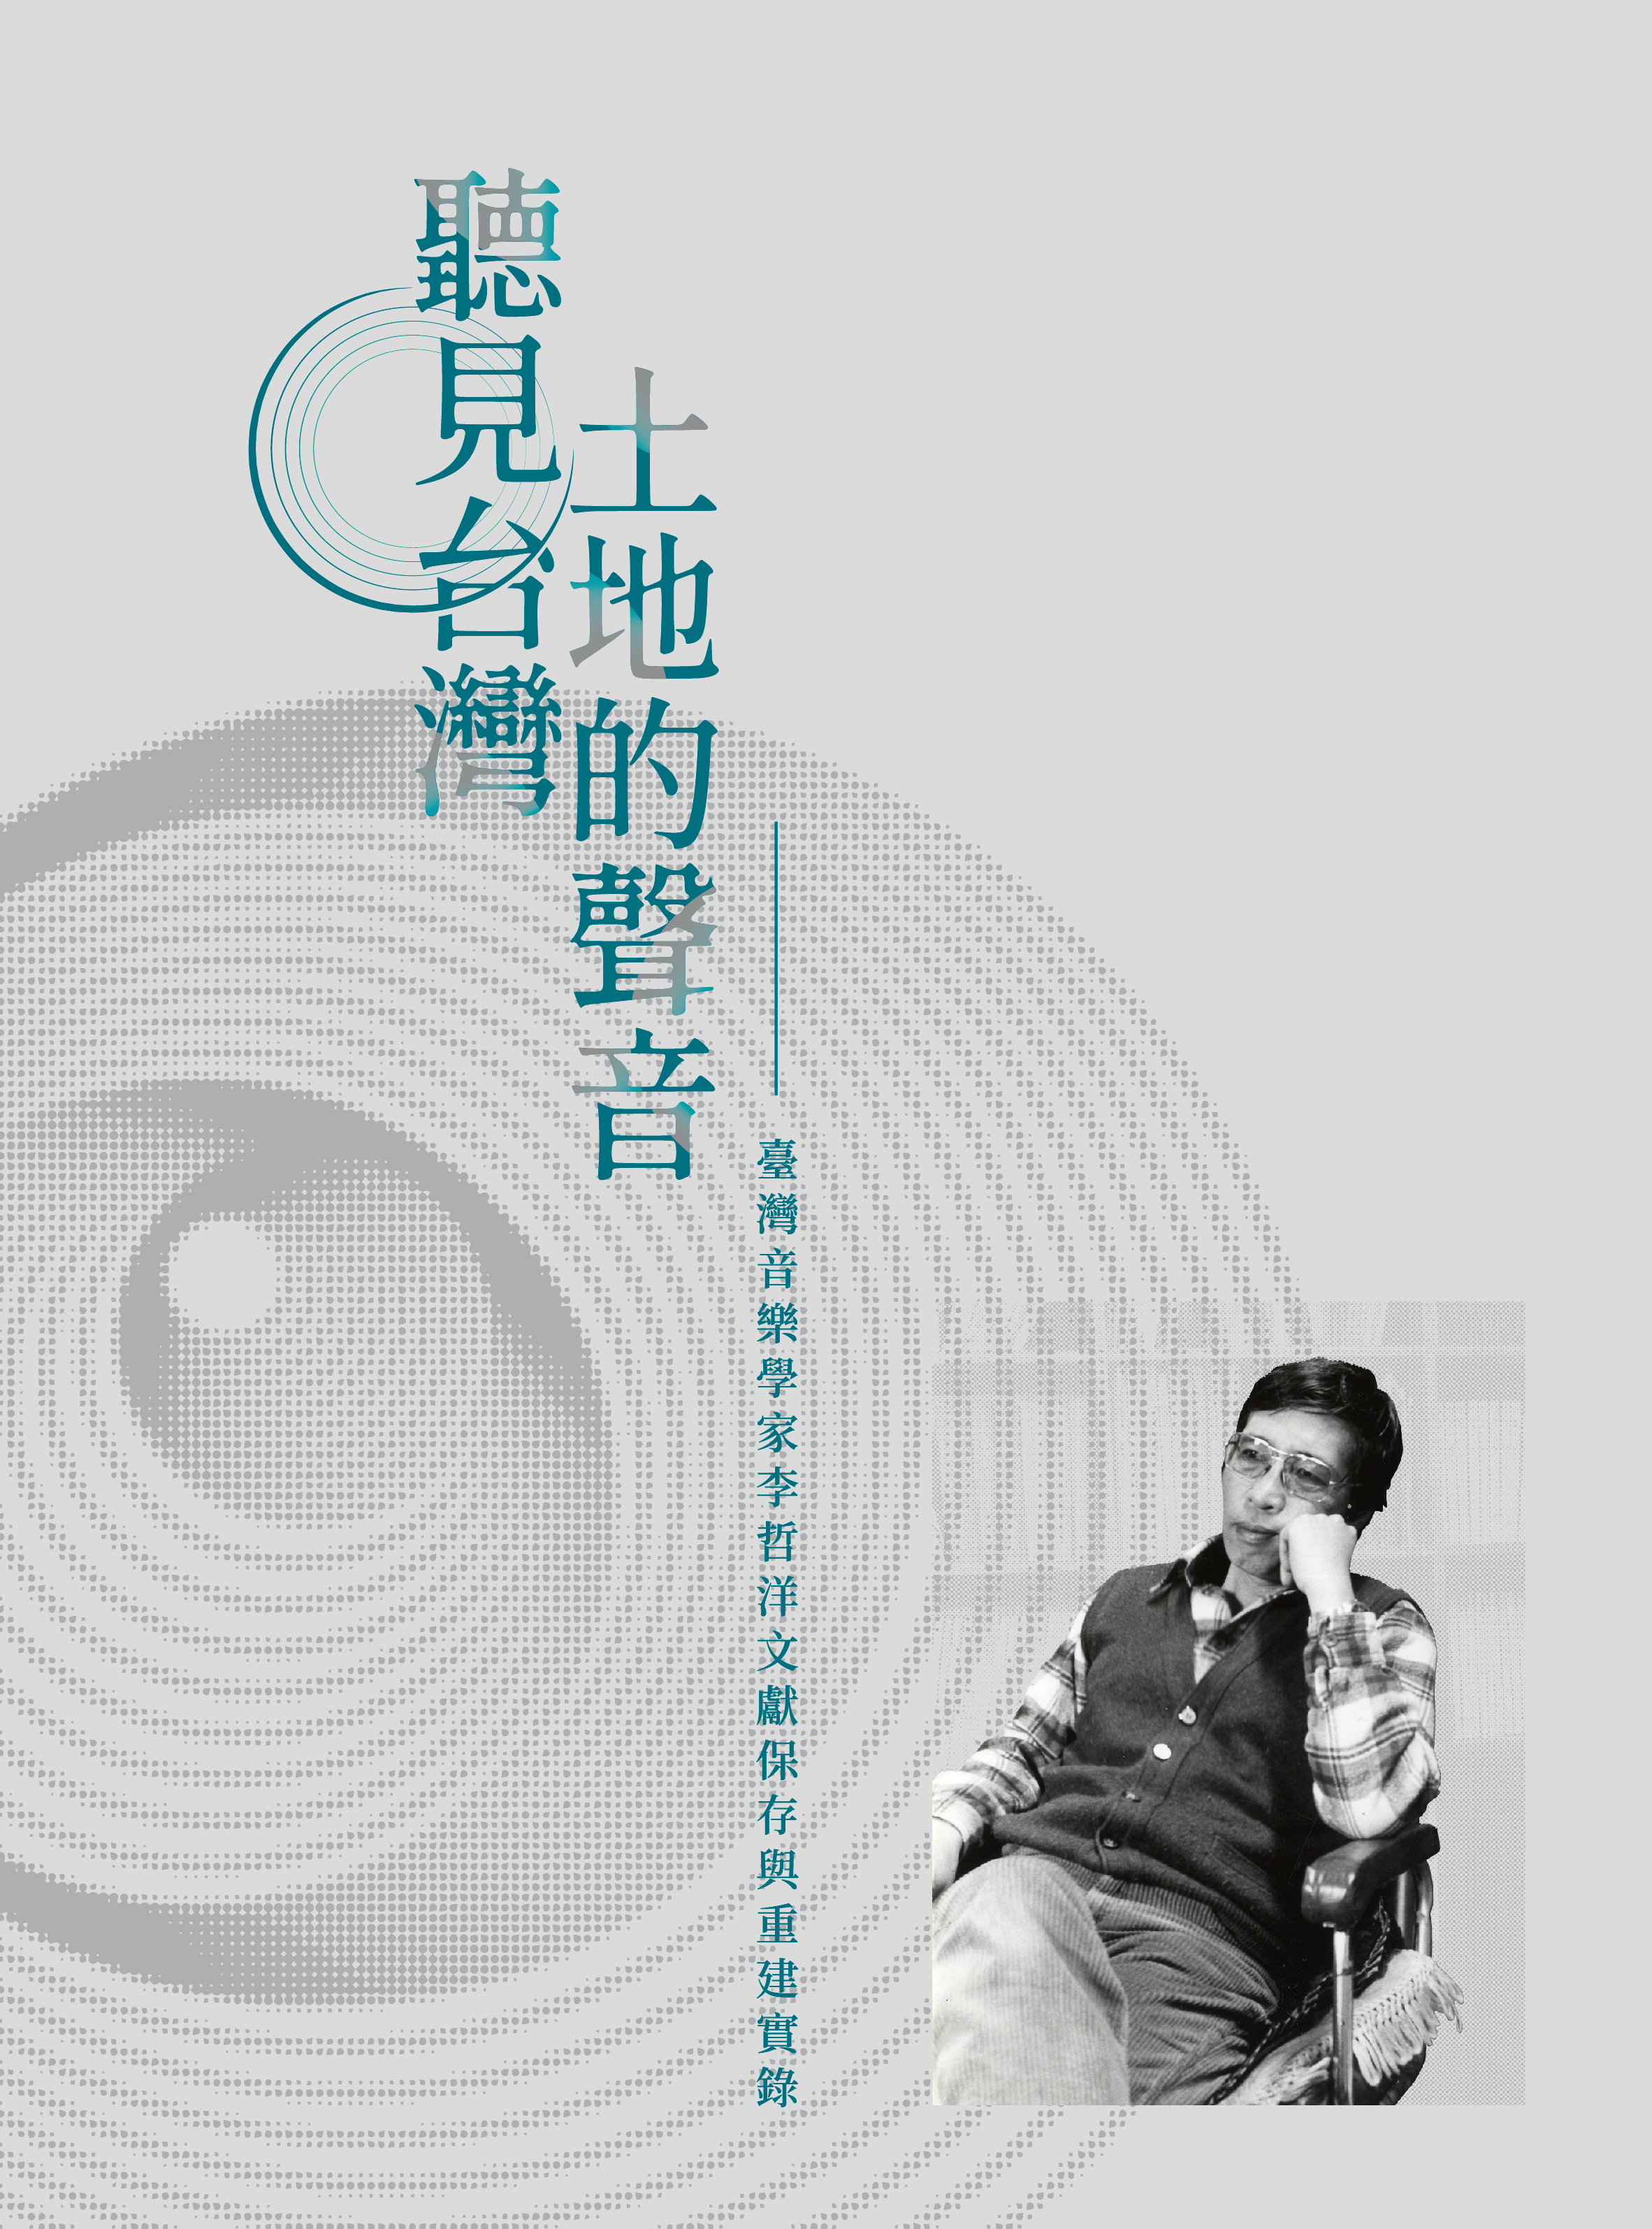 聽見台灣土地的聲音–臺灣音樂學家李哲洋文獻保存與重建實錄